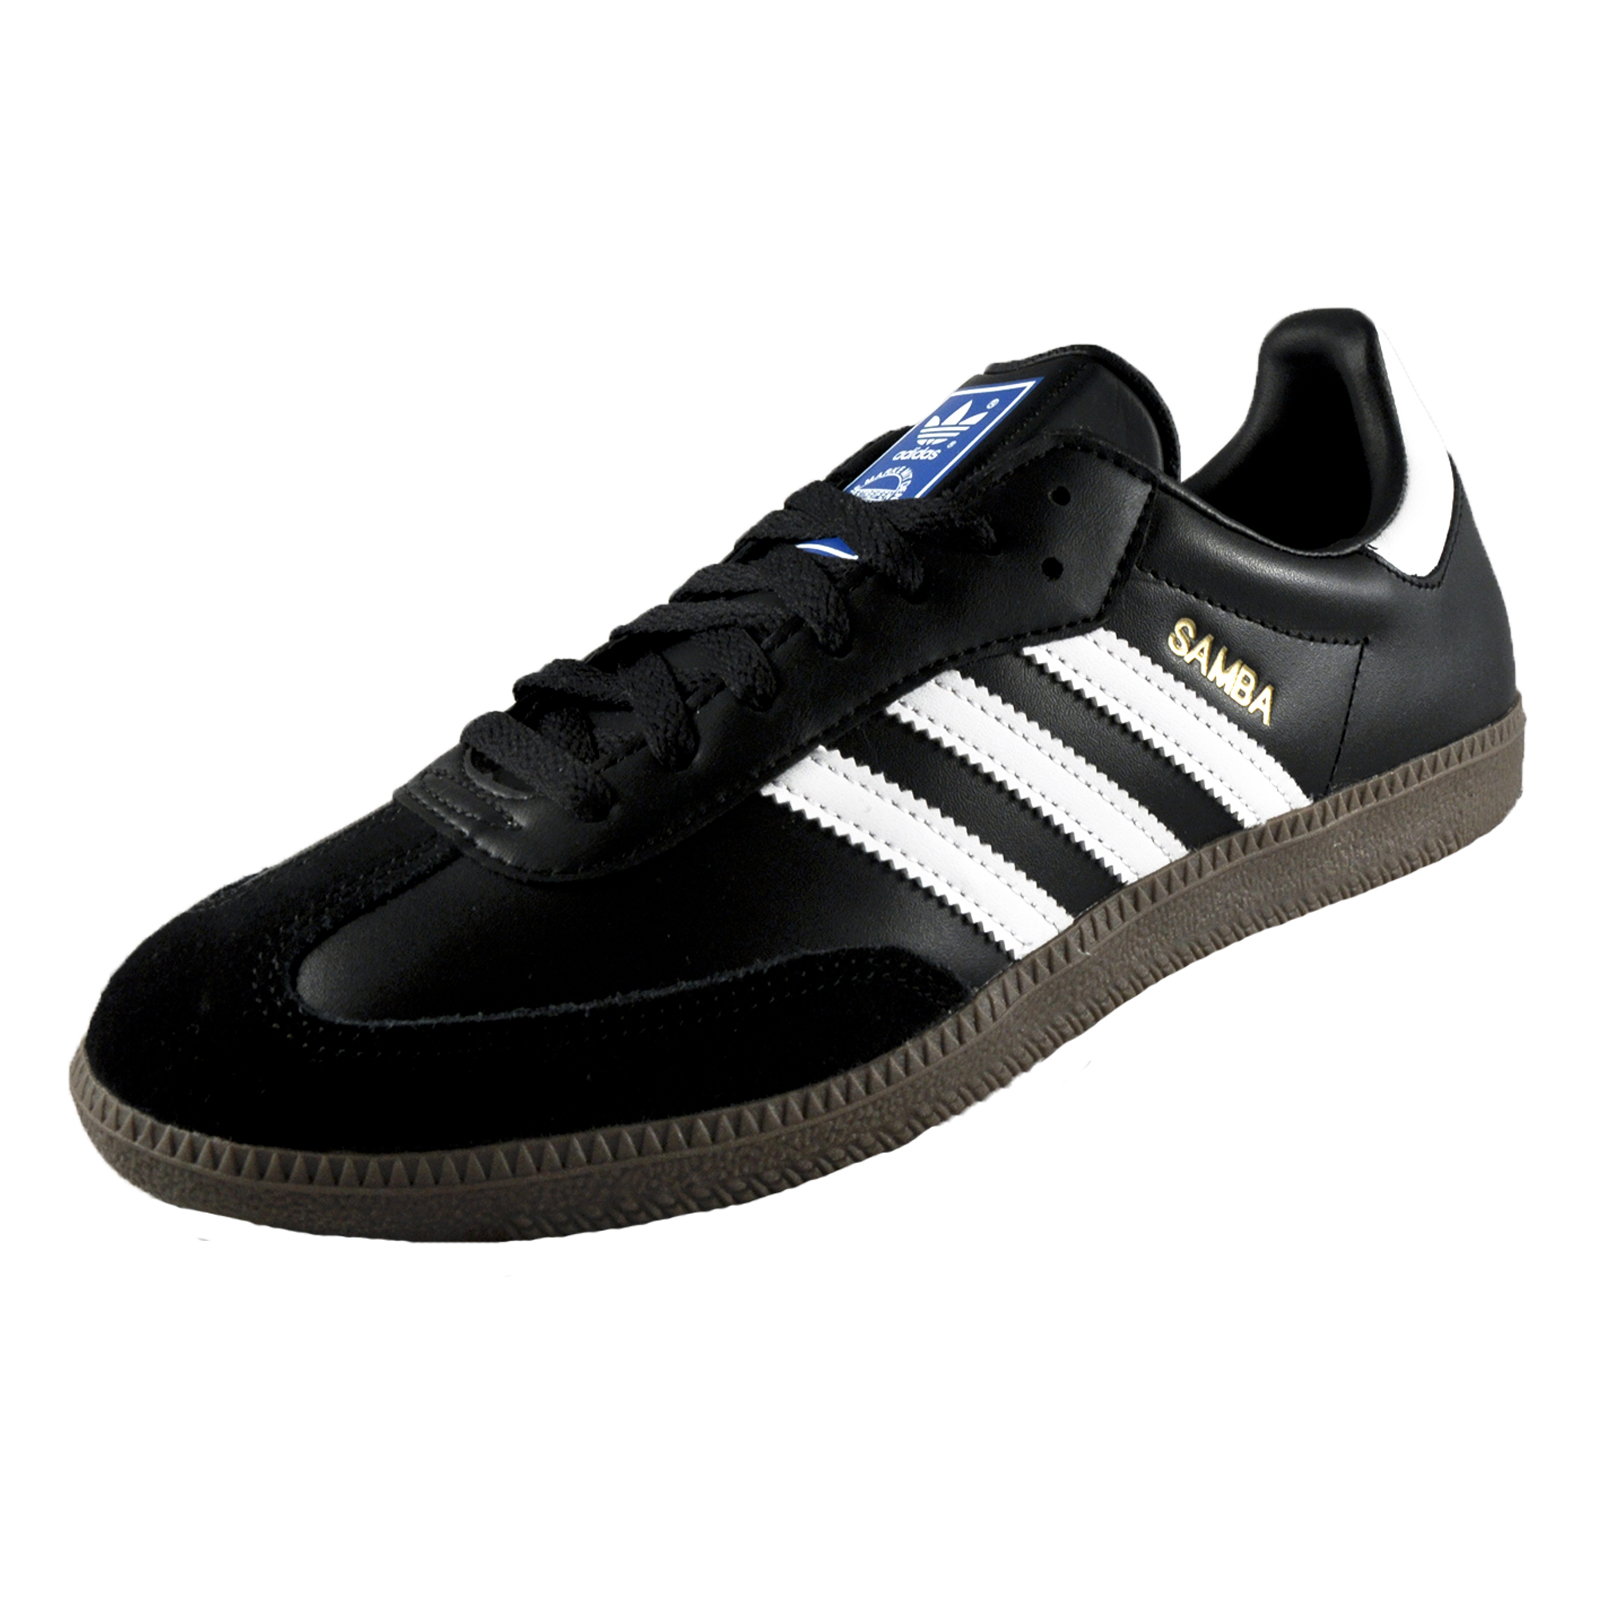 Adidas Originals Mens Samba Classic Leather Retro Trainers Black